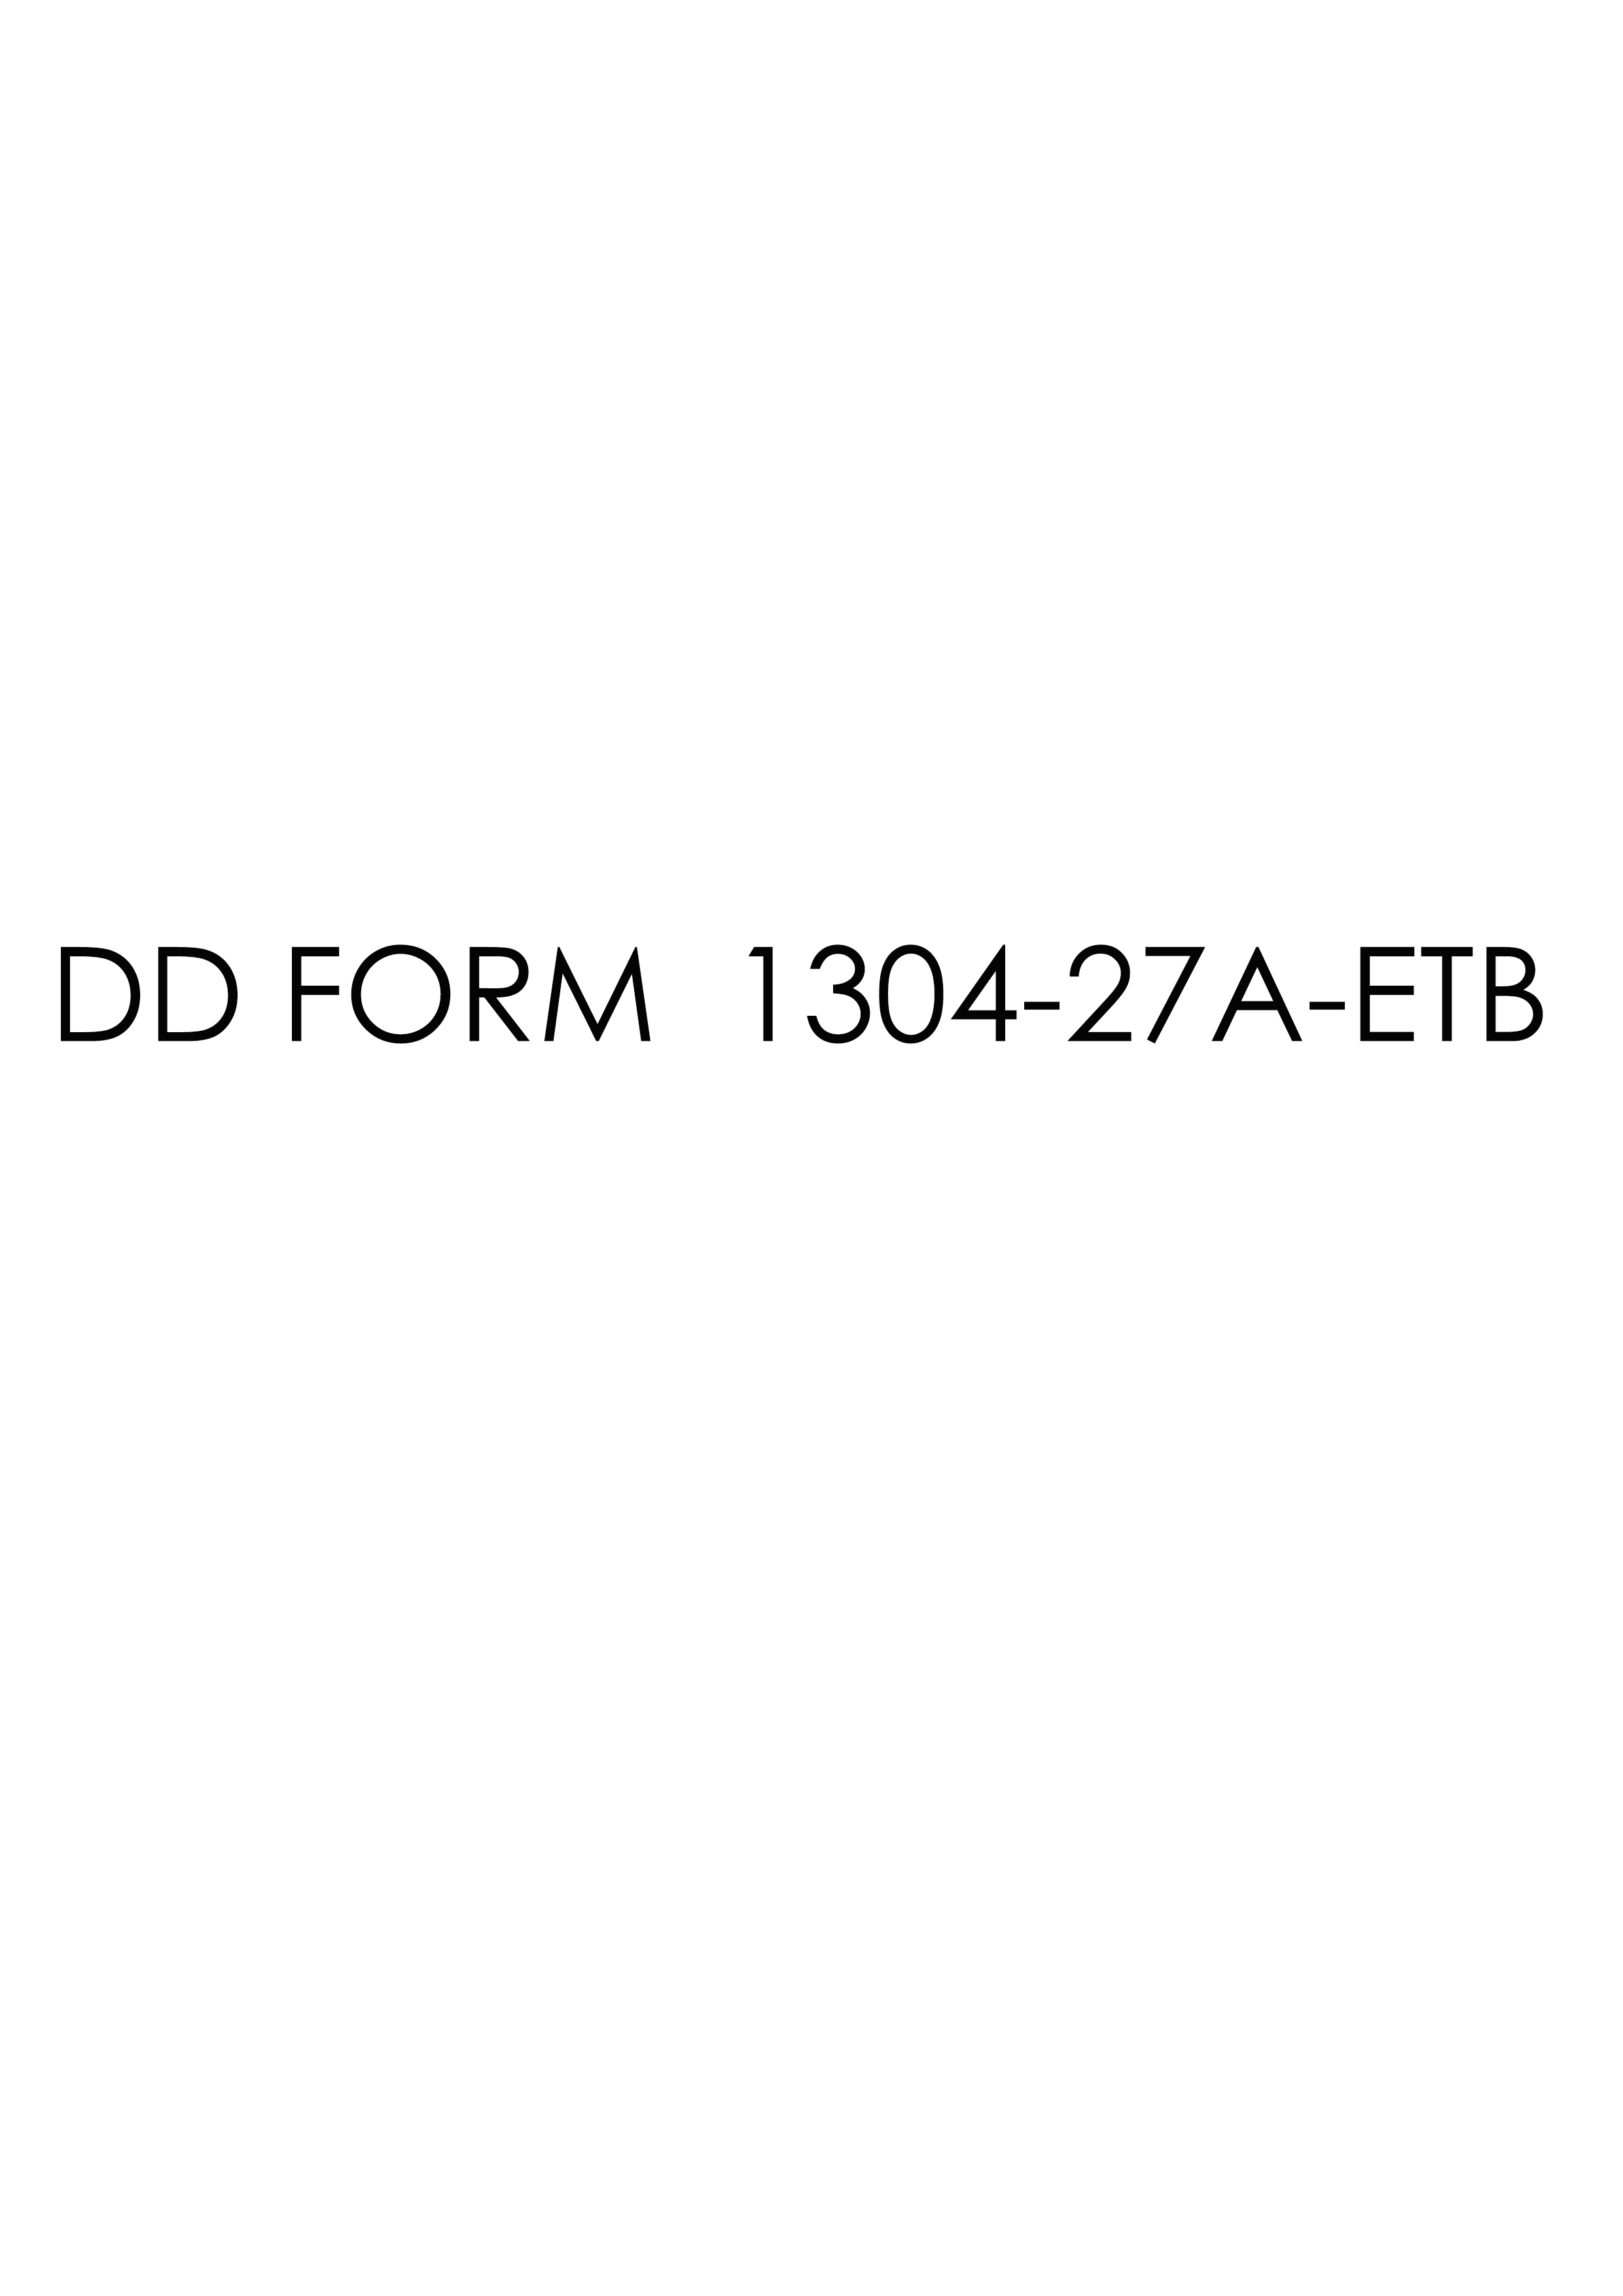 Download Fillable dd Form 1304-27A-ETB